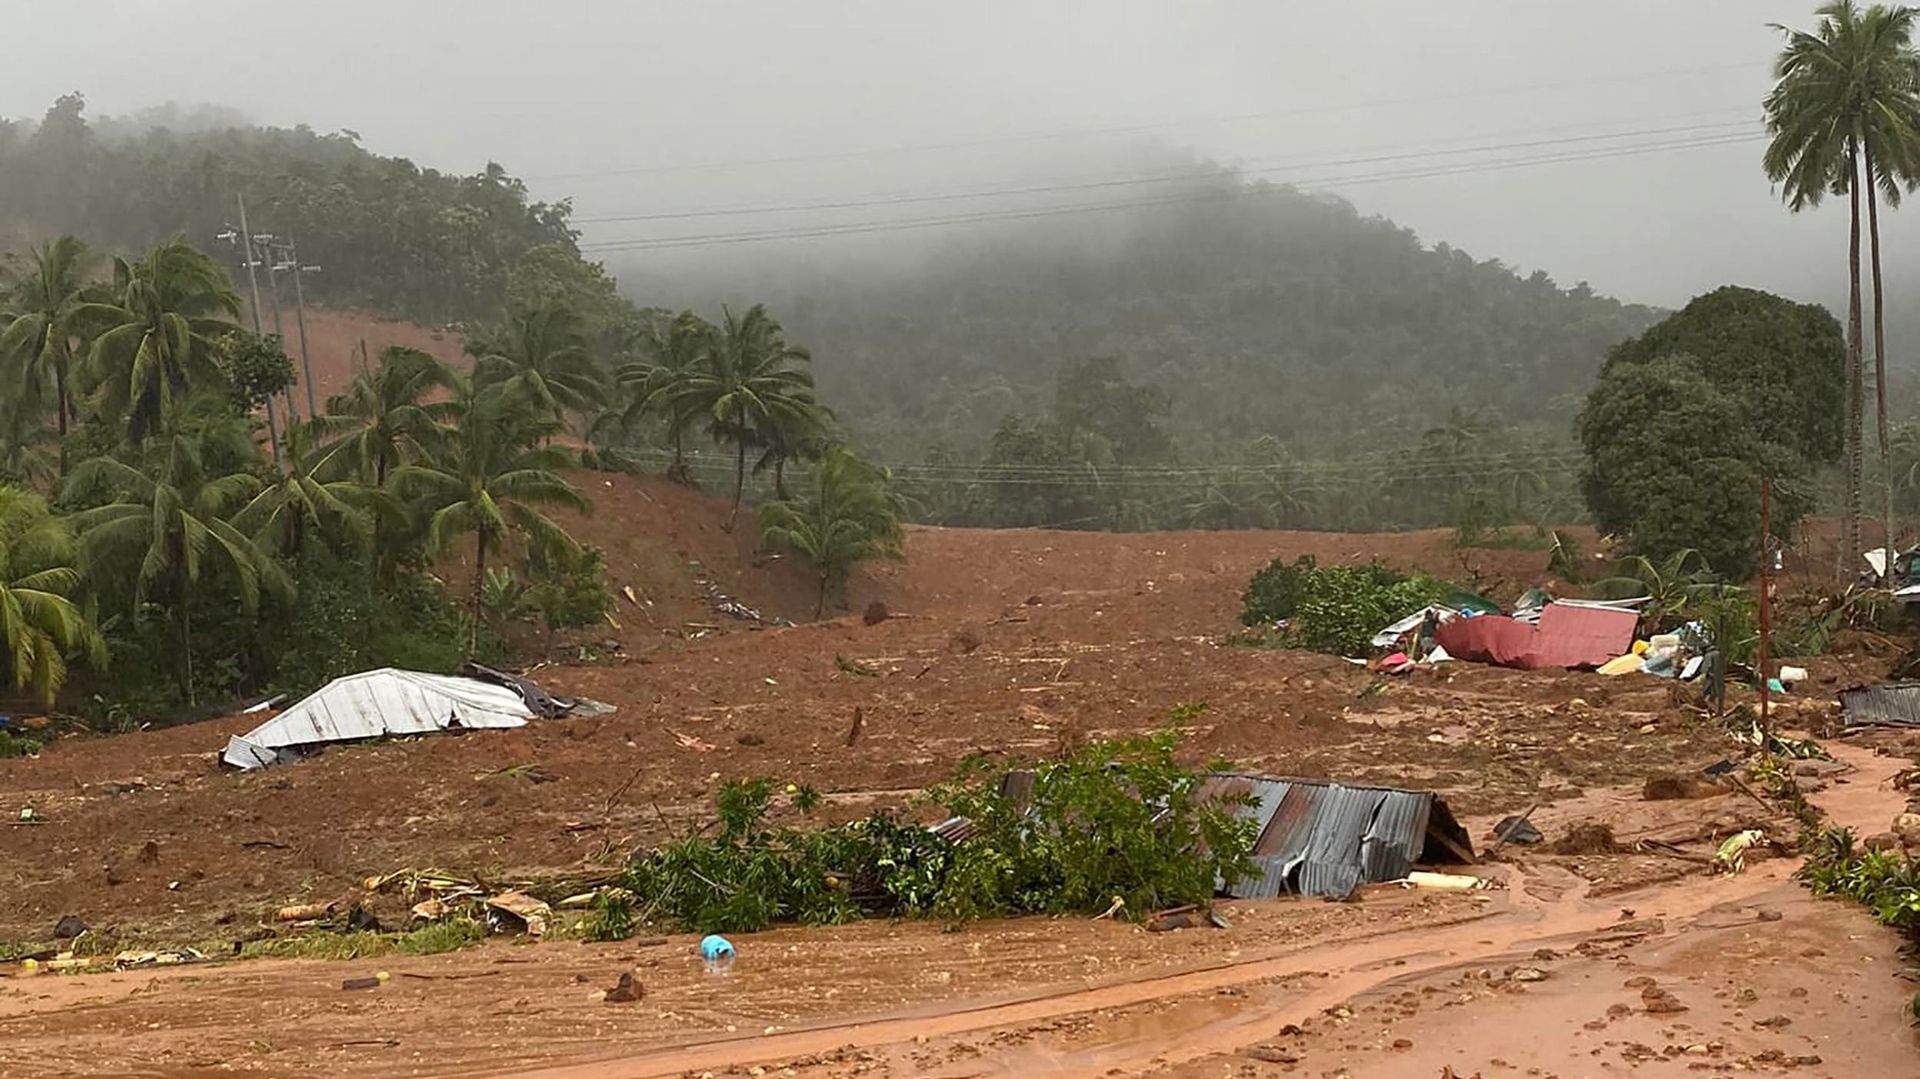 Glissement de terrain dans le village de Bunga, dans le sud des Philippines, suite aux fortes pluies provoquées par la tempête tropicale Agaton.